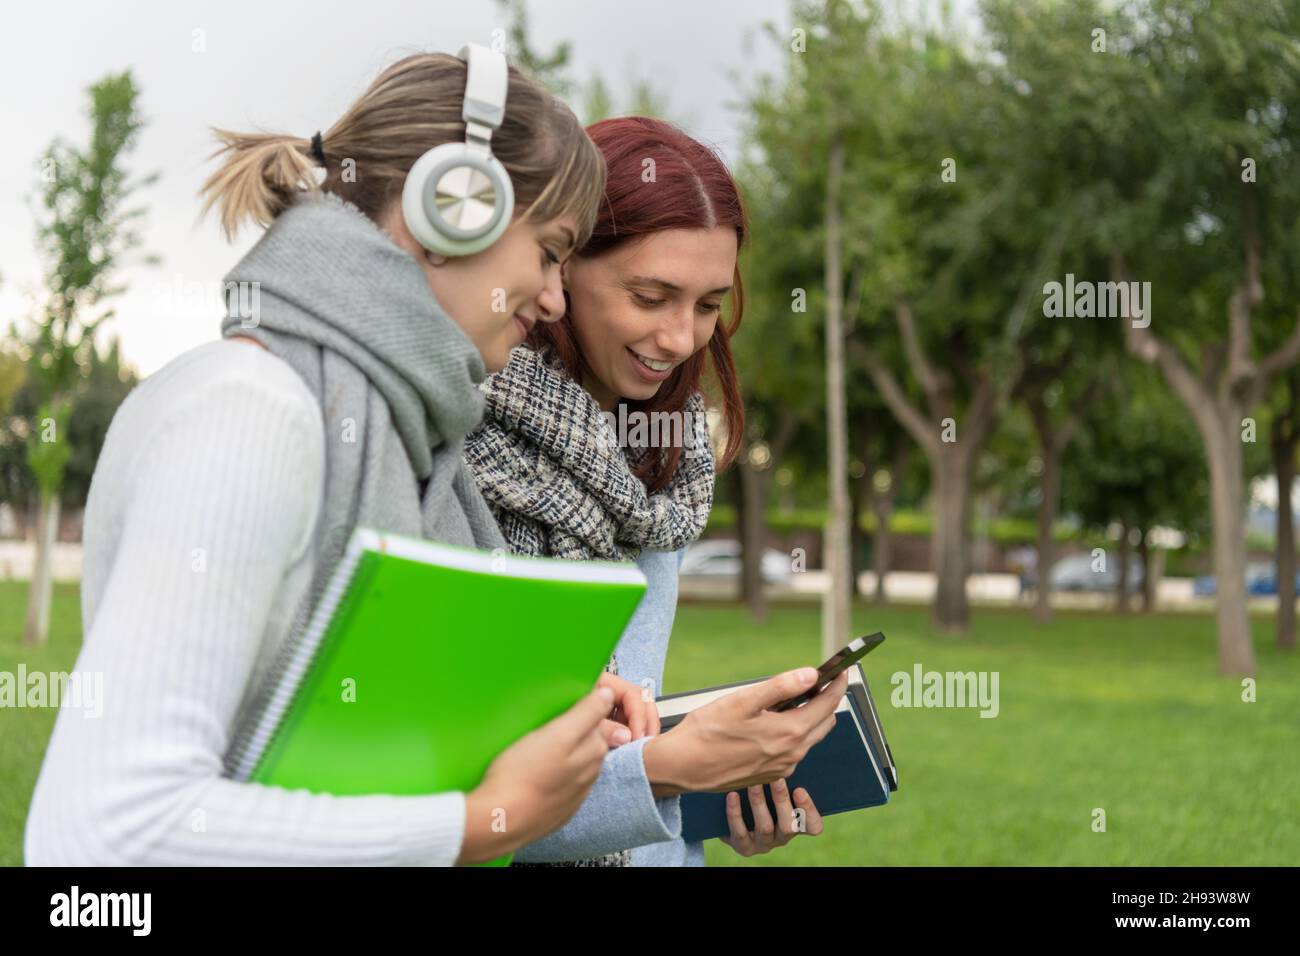 Deux jeunes filles regardent le téléphone cellulaire pendant qu'elles se promènent dans le parc Banque D'Images